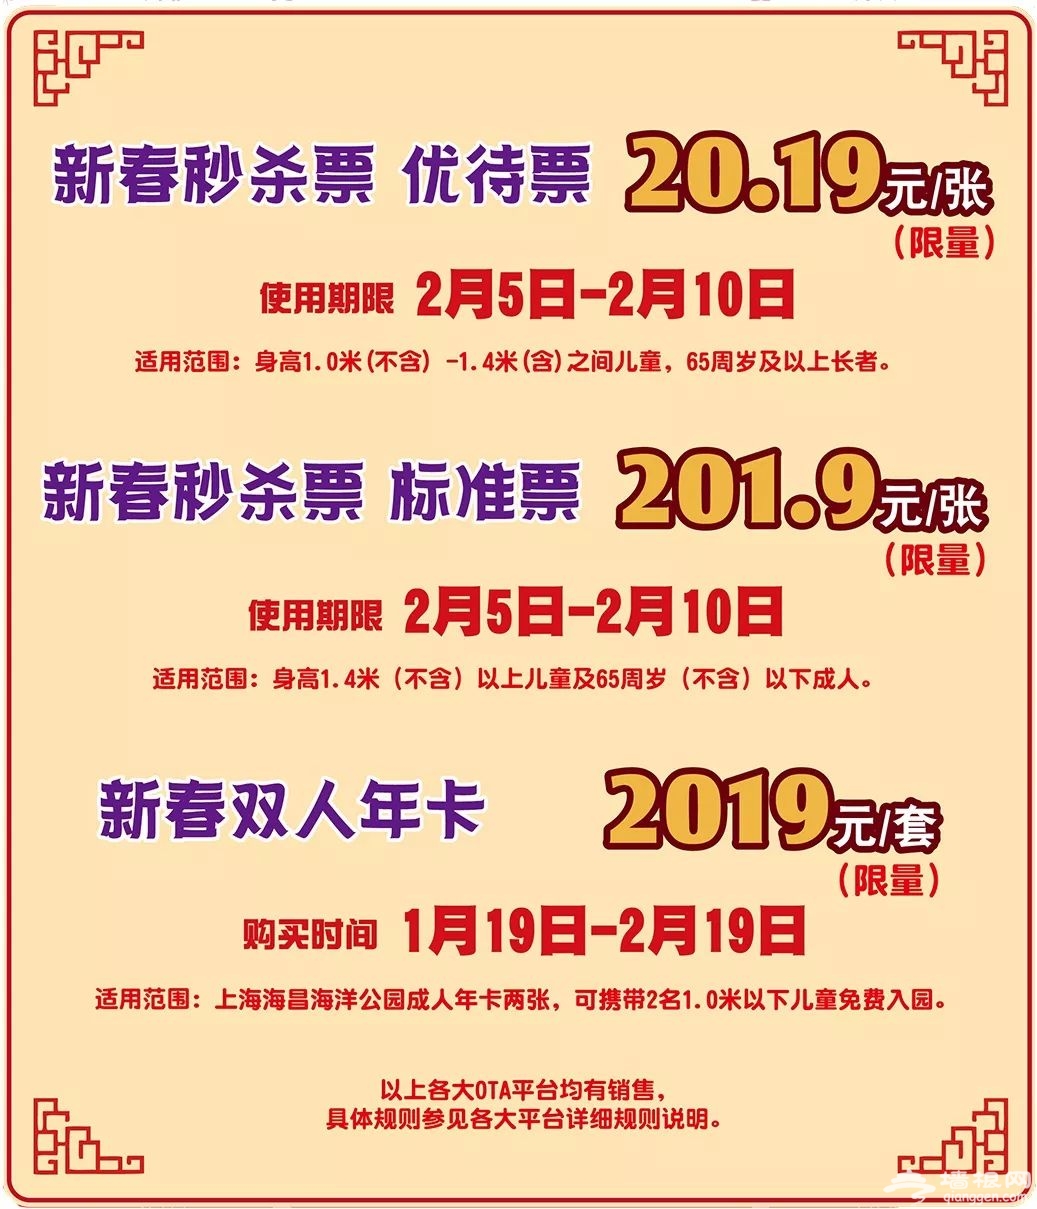 2019春节上海海昌海洋公园游玩攻略 过个海派潮年